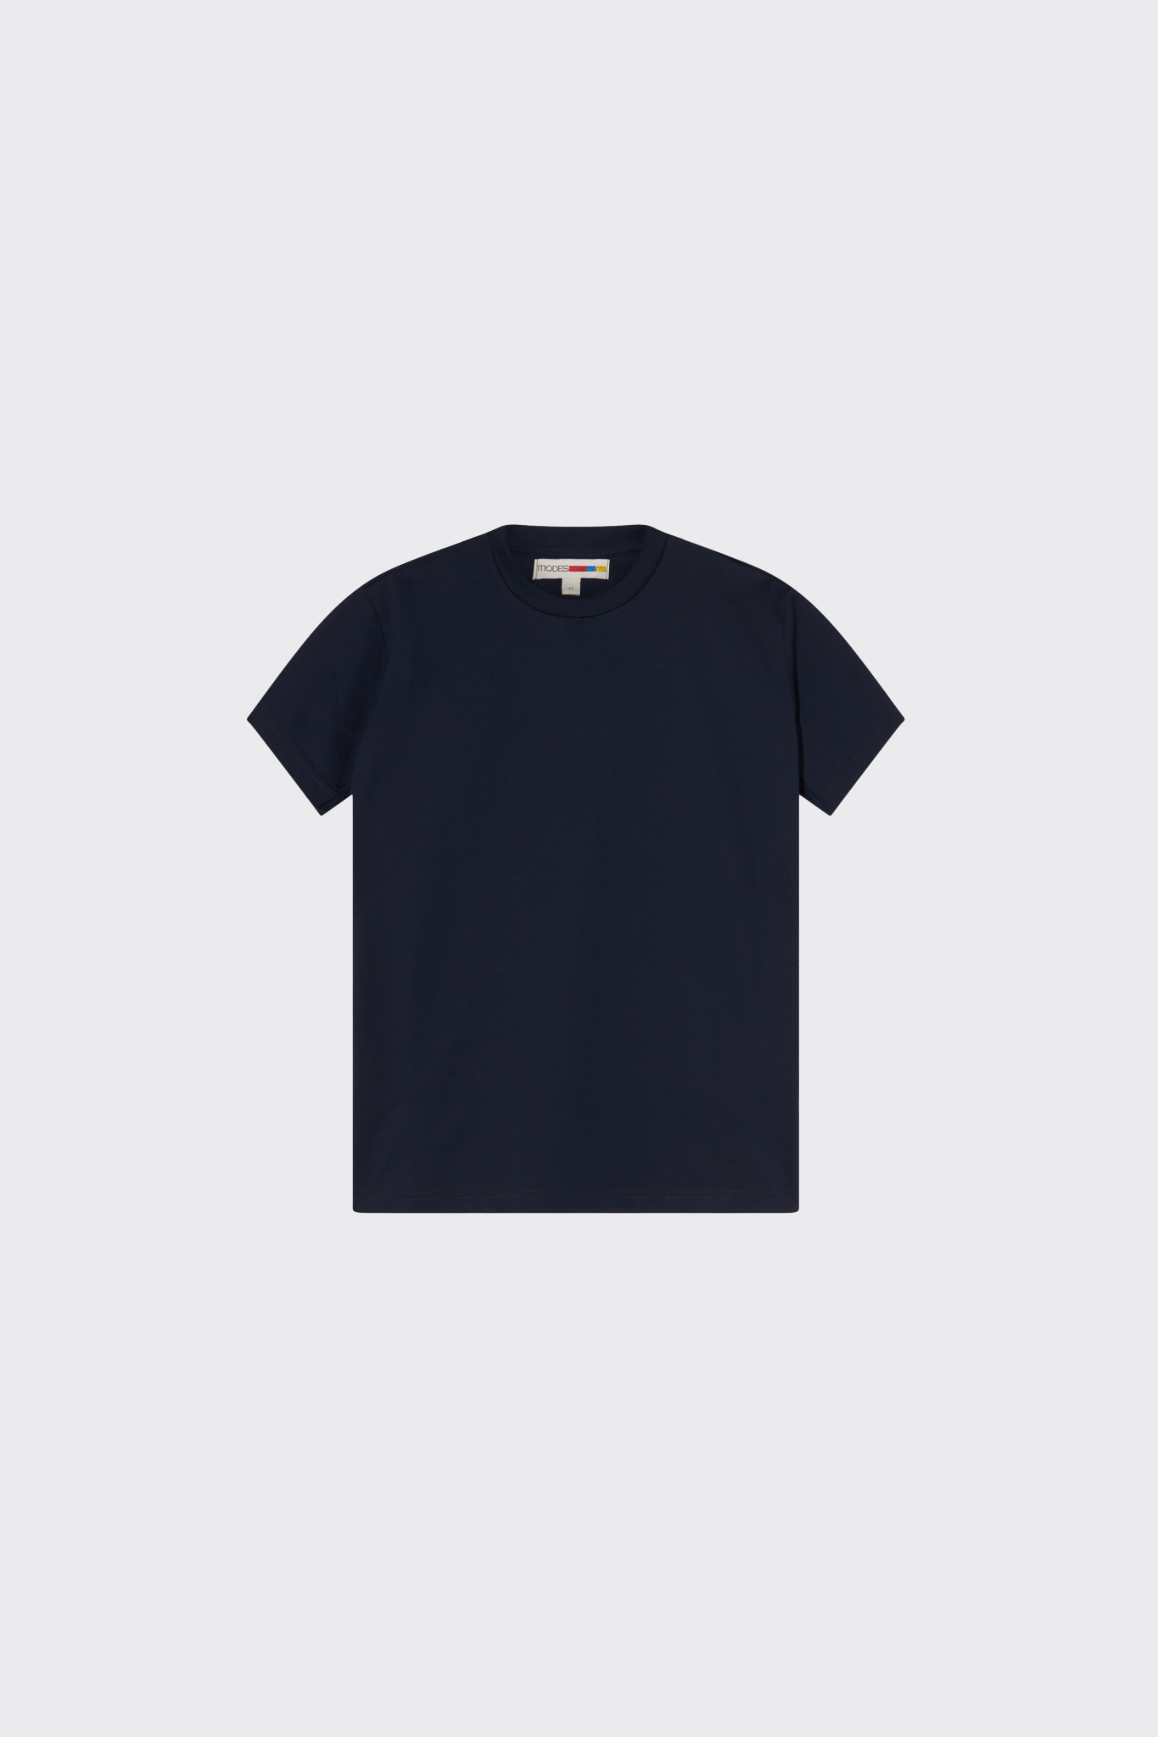 Unisex Plain Blue T-shirt